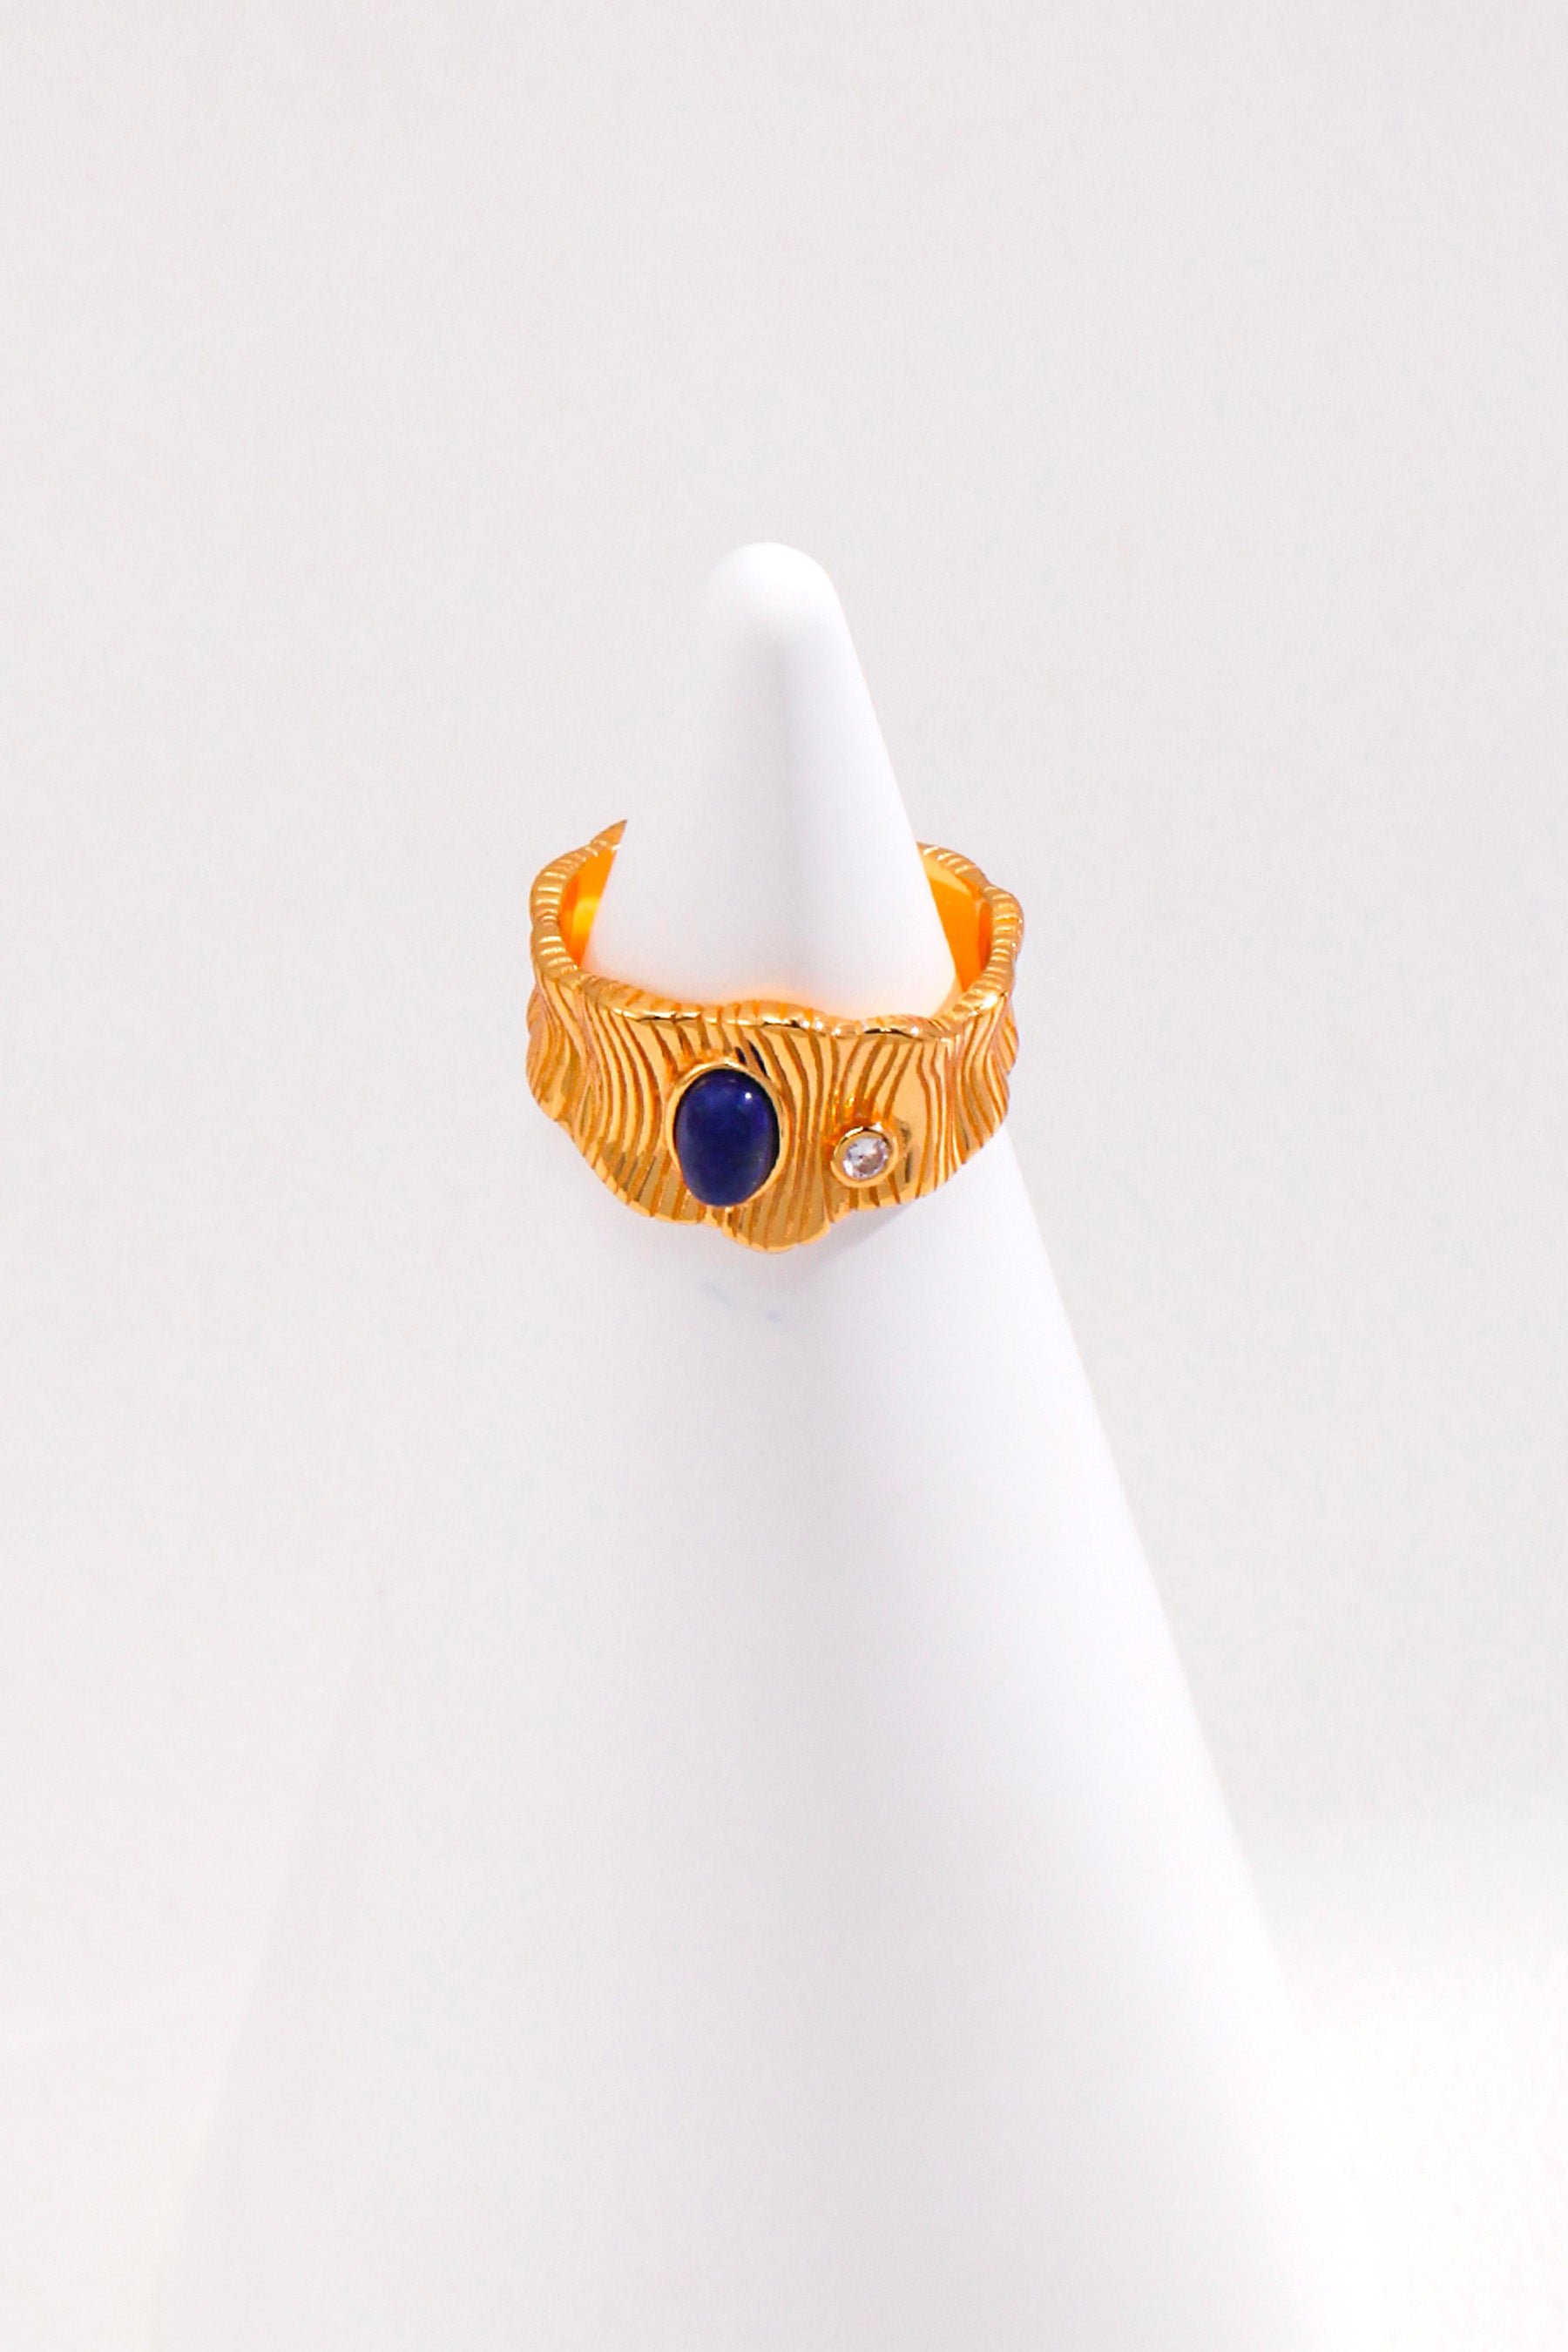 designer gold aquamarine ring